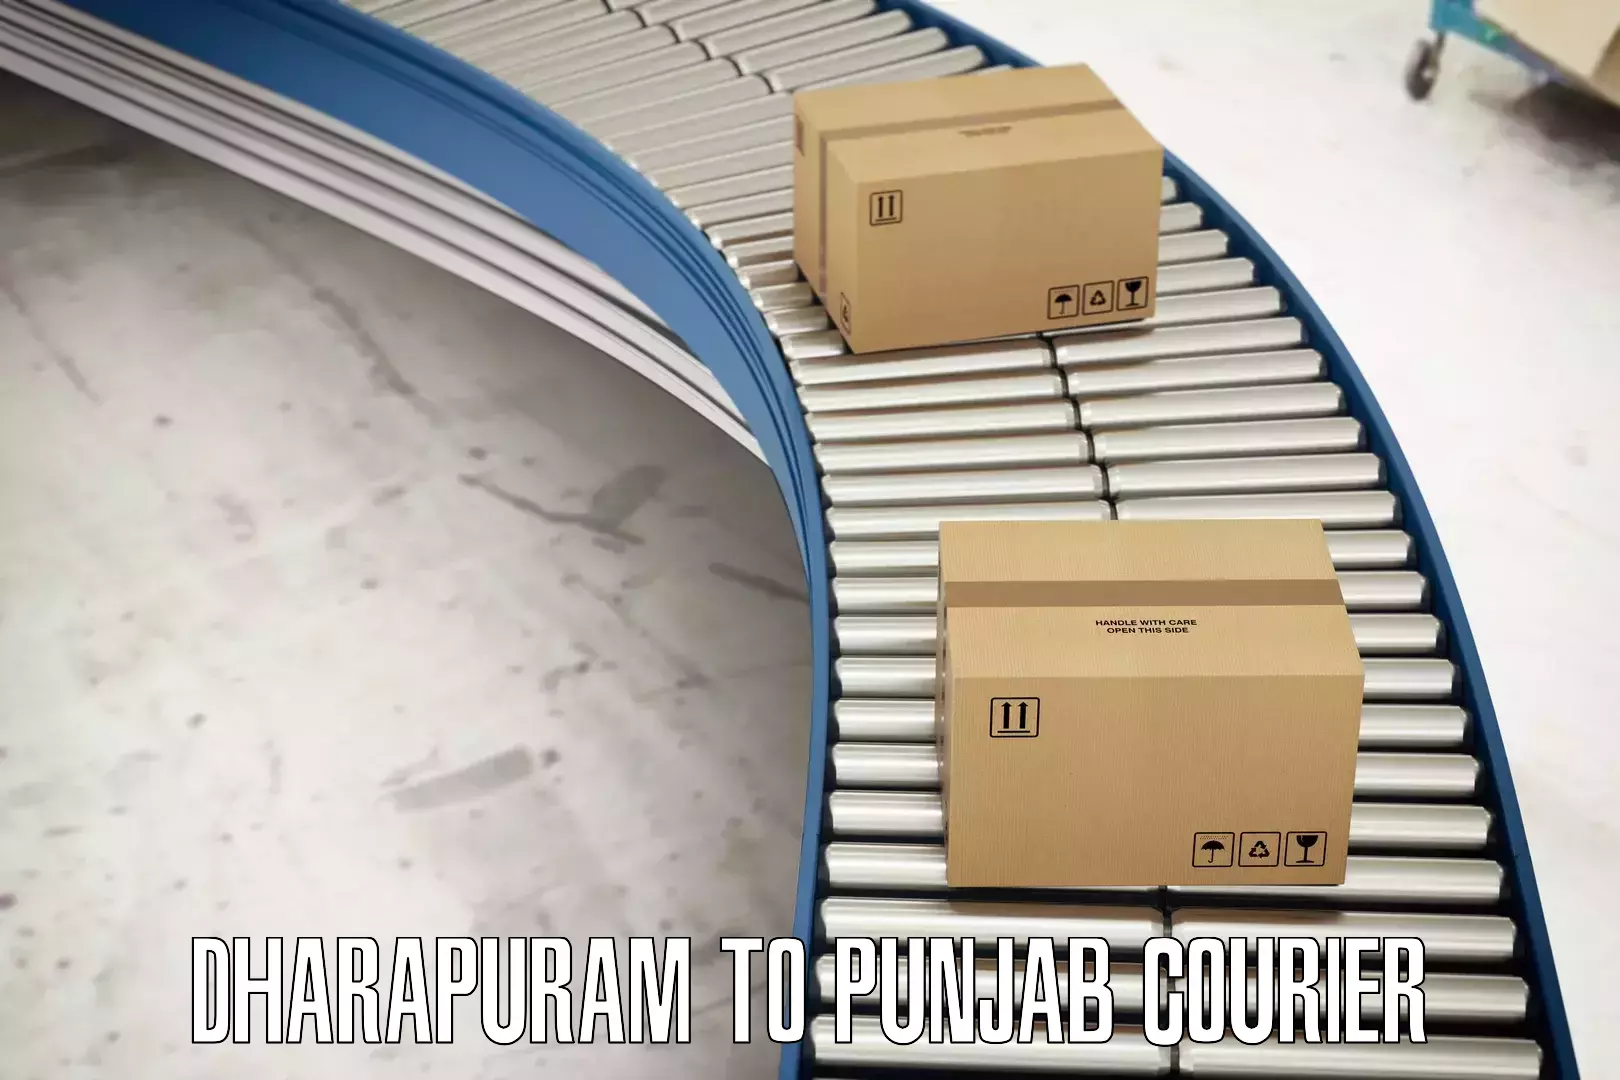 High-capacity parcel service Dharapuram to Punjab